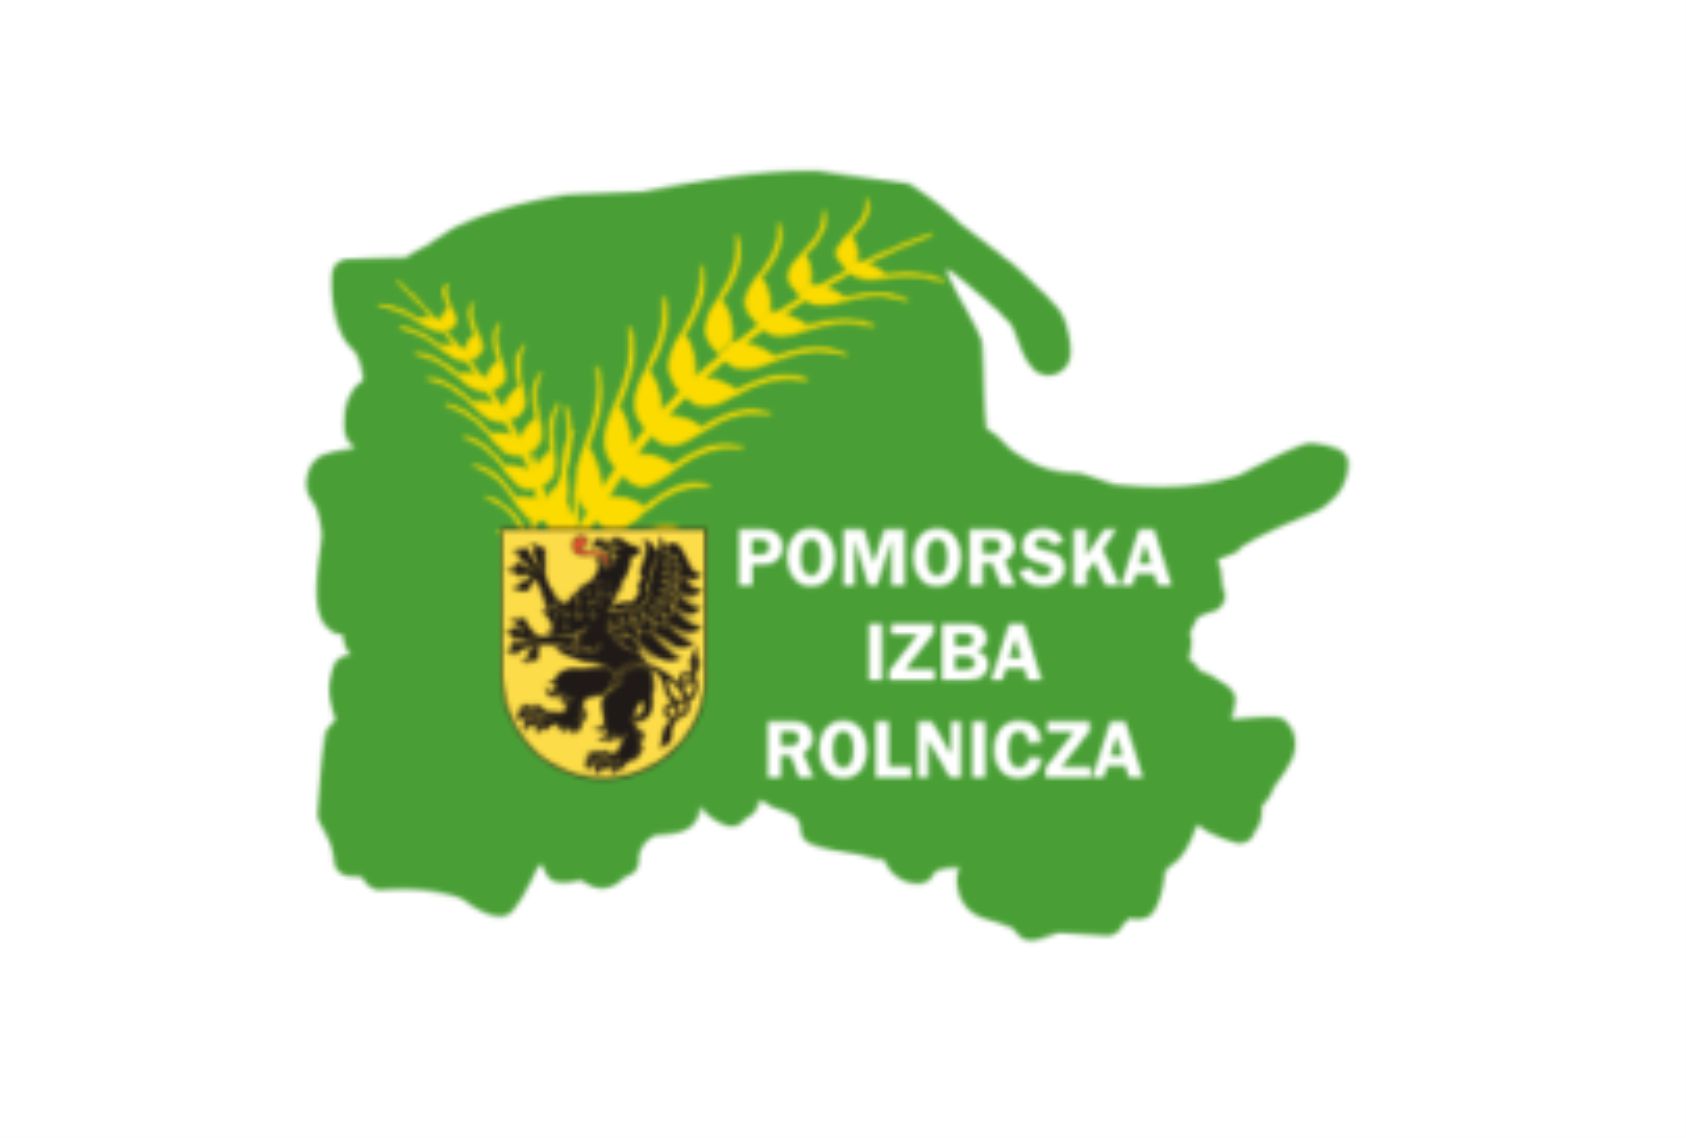 Udostępnienie do wglądu spisu członków Pomorskiej Izby Rolniczej uprawnionych do głosowania w okręgu wyborczym nr 21 (Gmina Przechlewo)